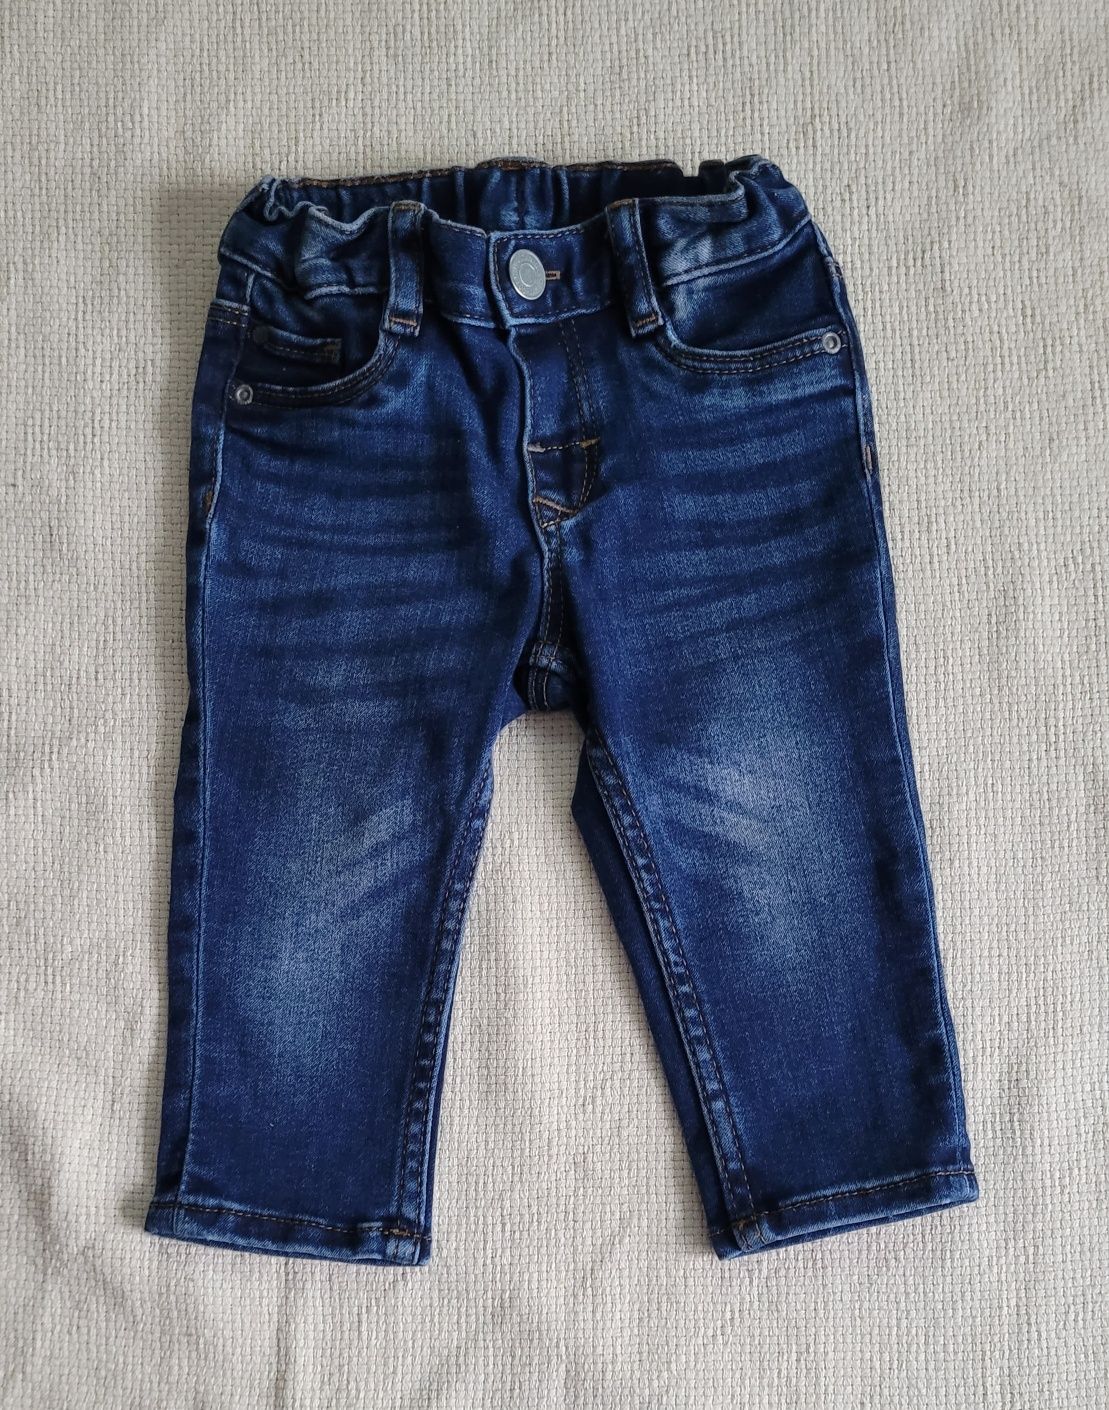 Spodnie jeansy slim fit h&m 74